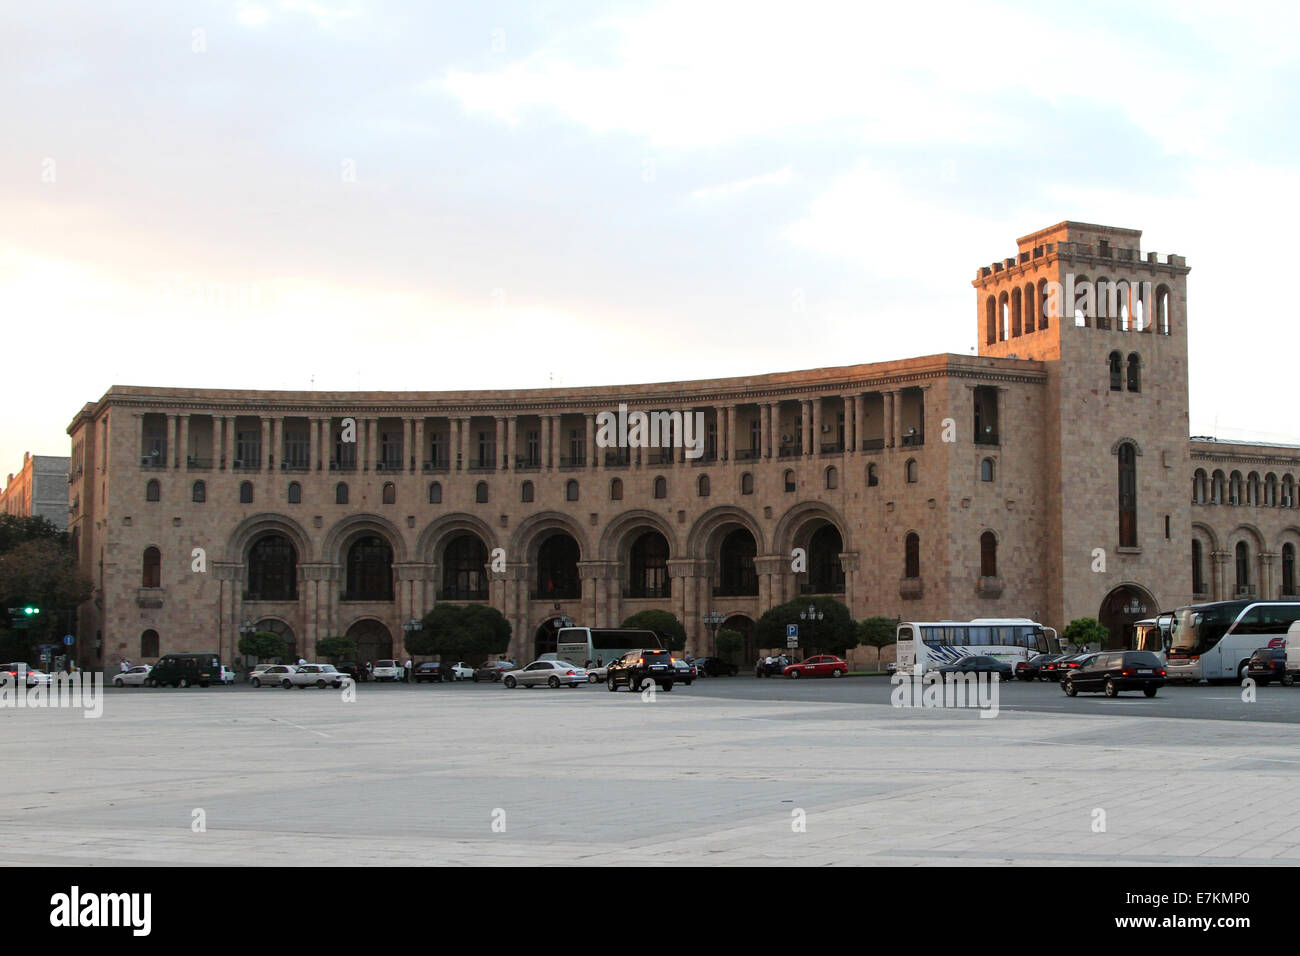 Il Ministero degli Affari Esteri in Piazza della Repubblica nel centro di Yerevan, Armenia come fotografato il lunedì, 15 settembre 2014. Foto Stock